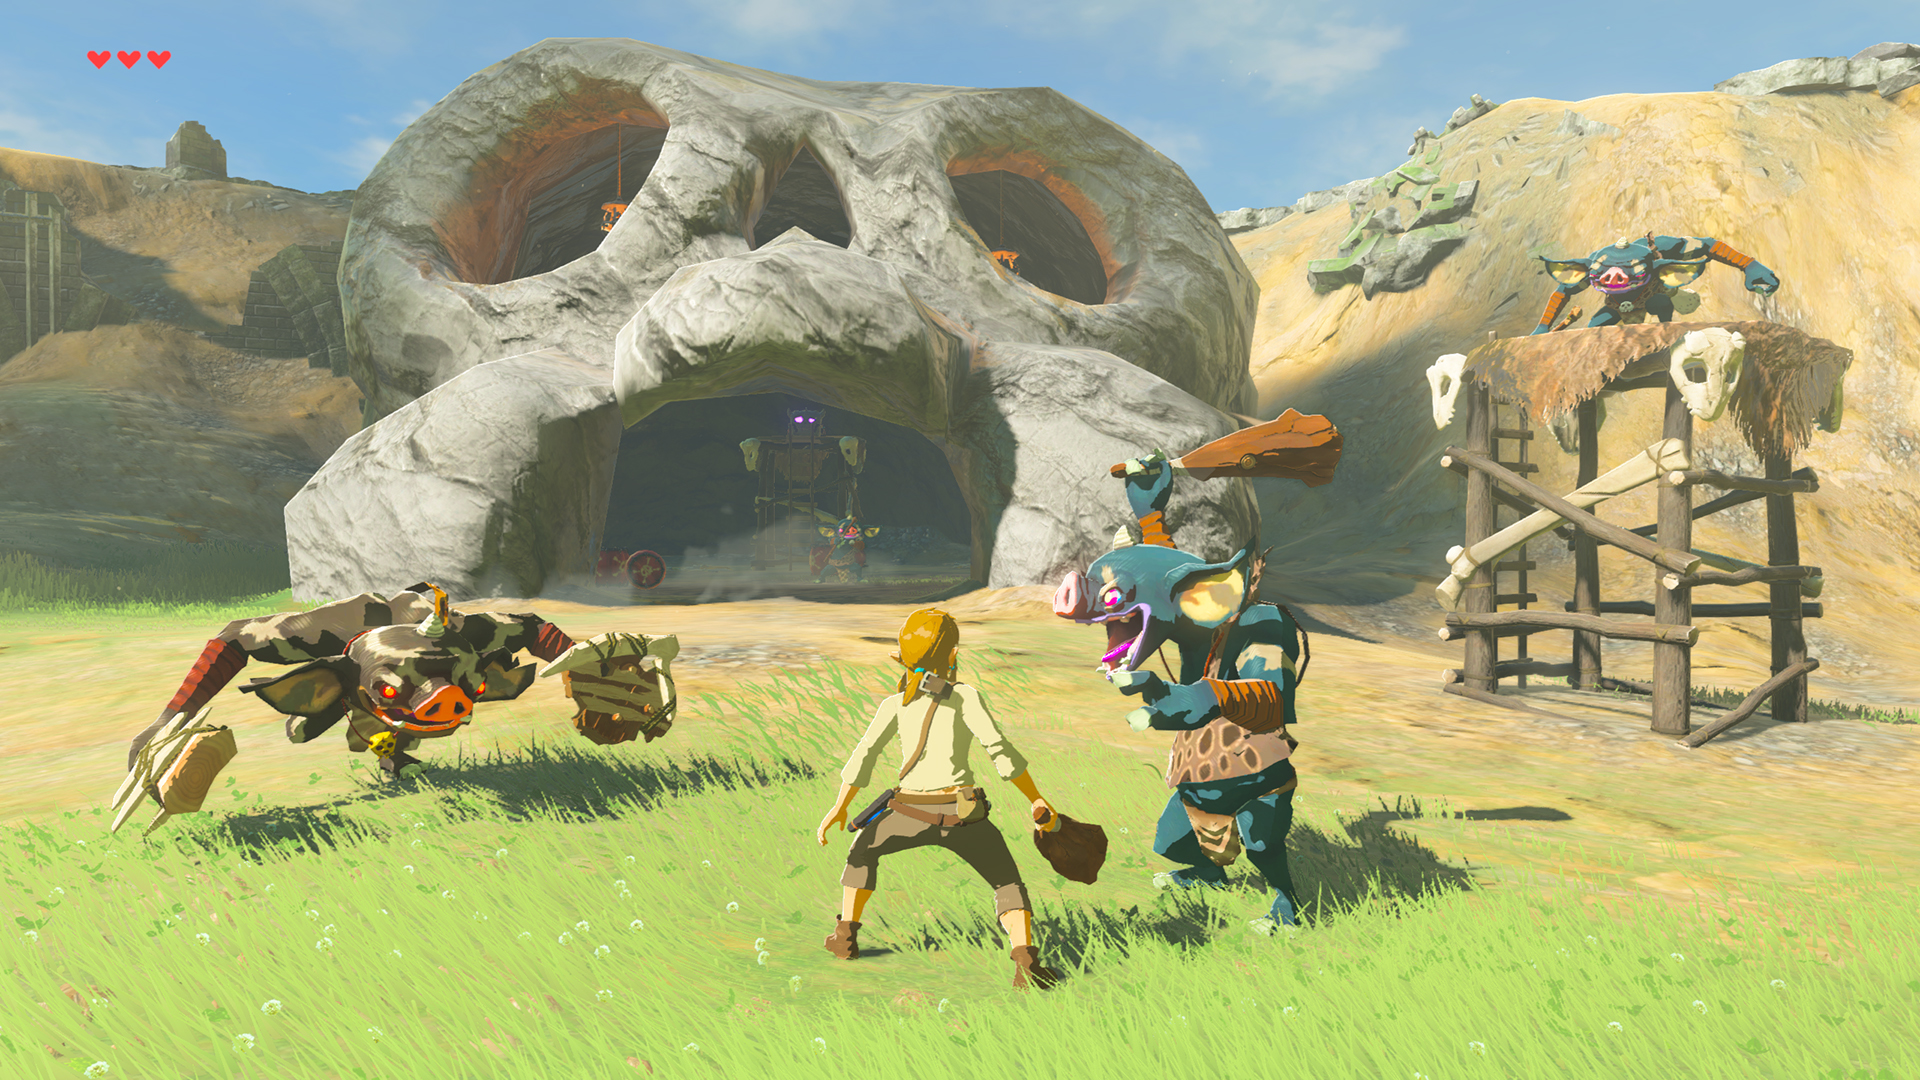 Legend of Zelda gameplay